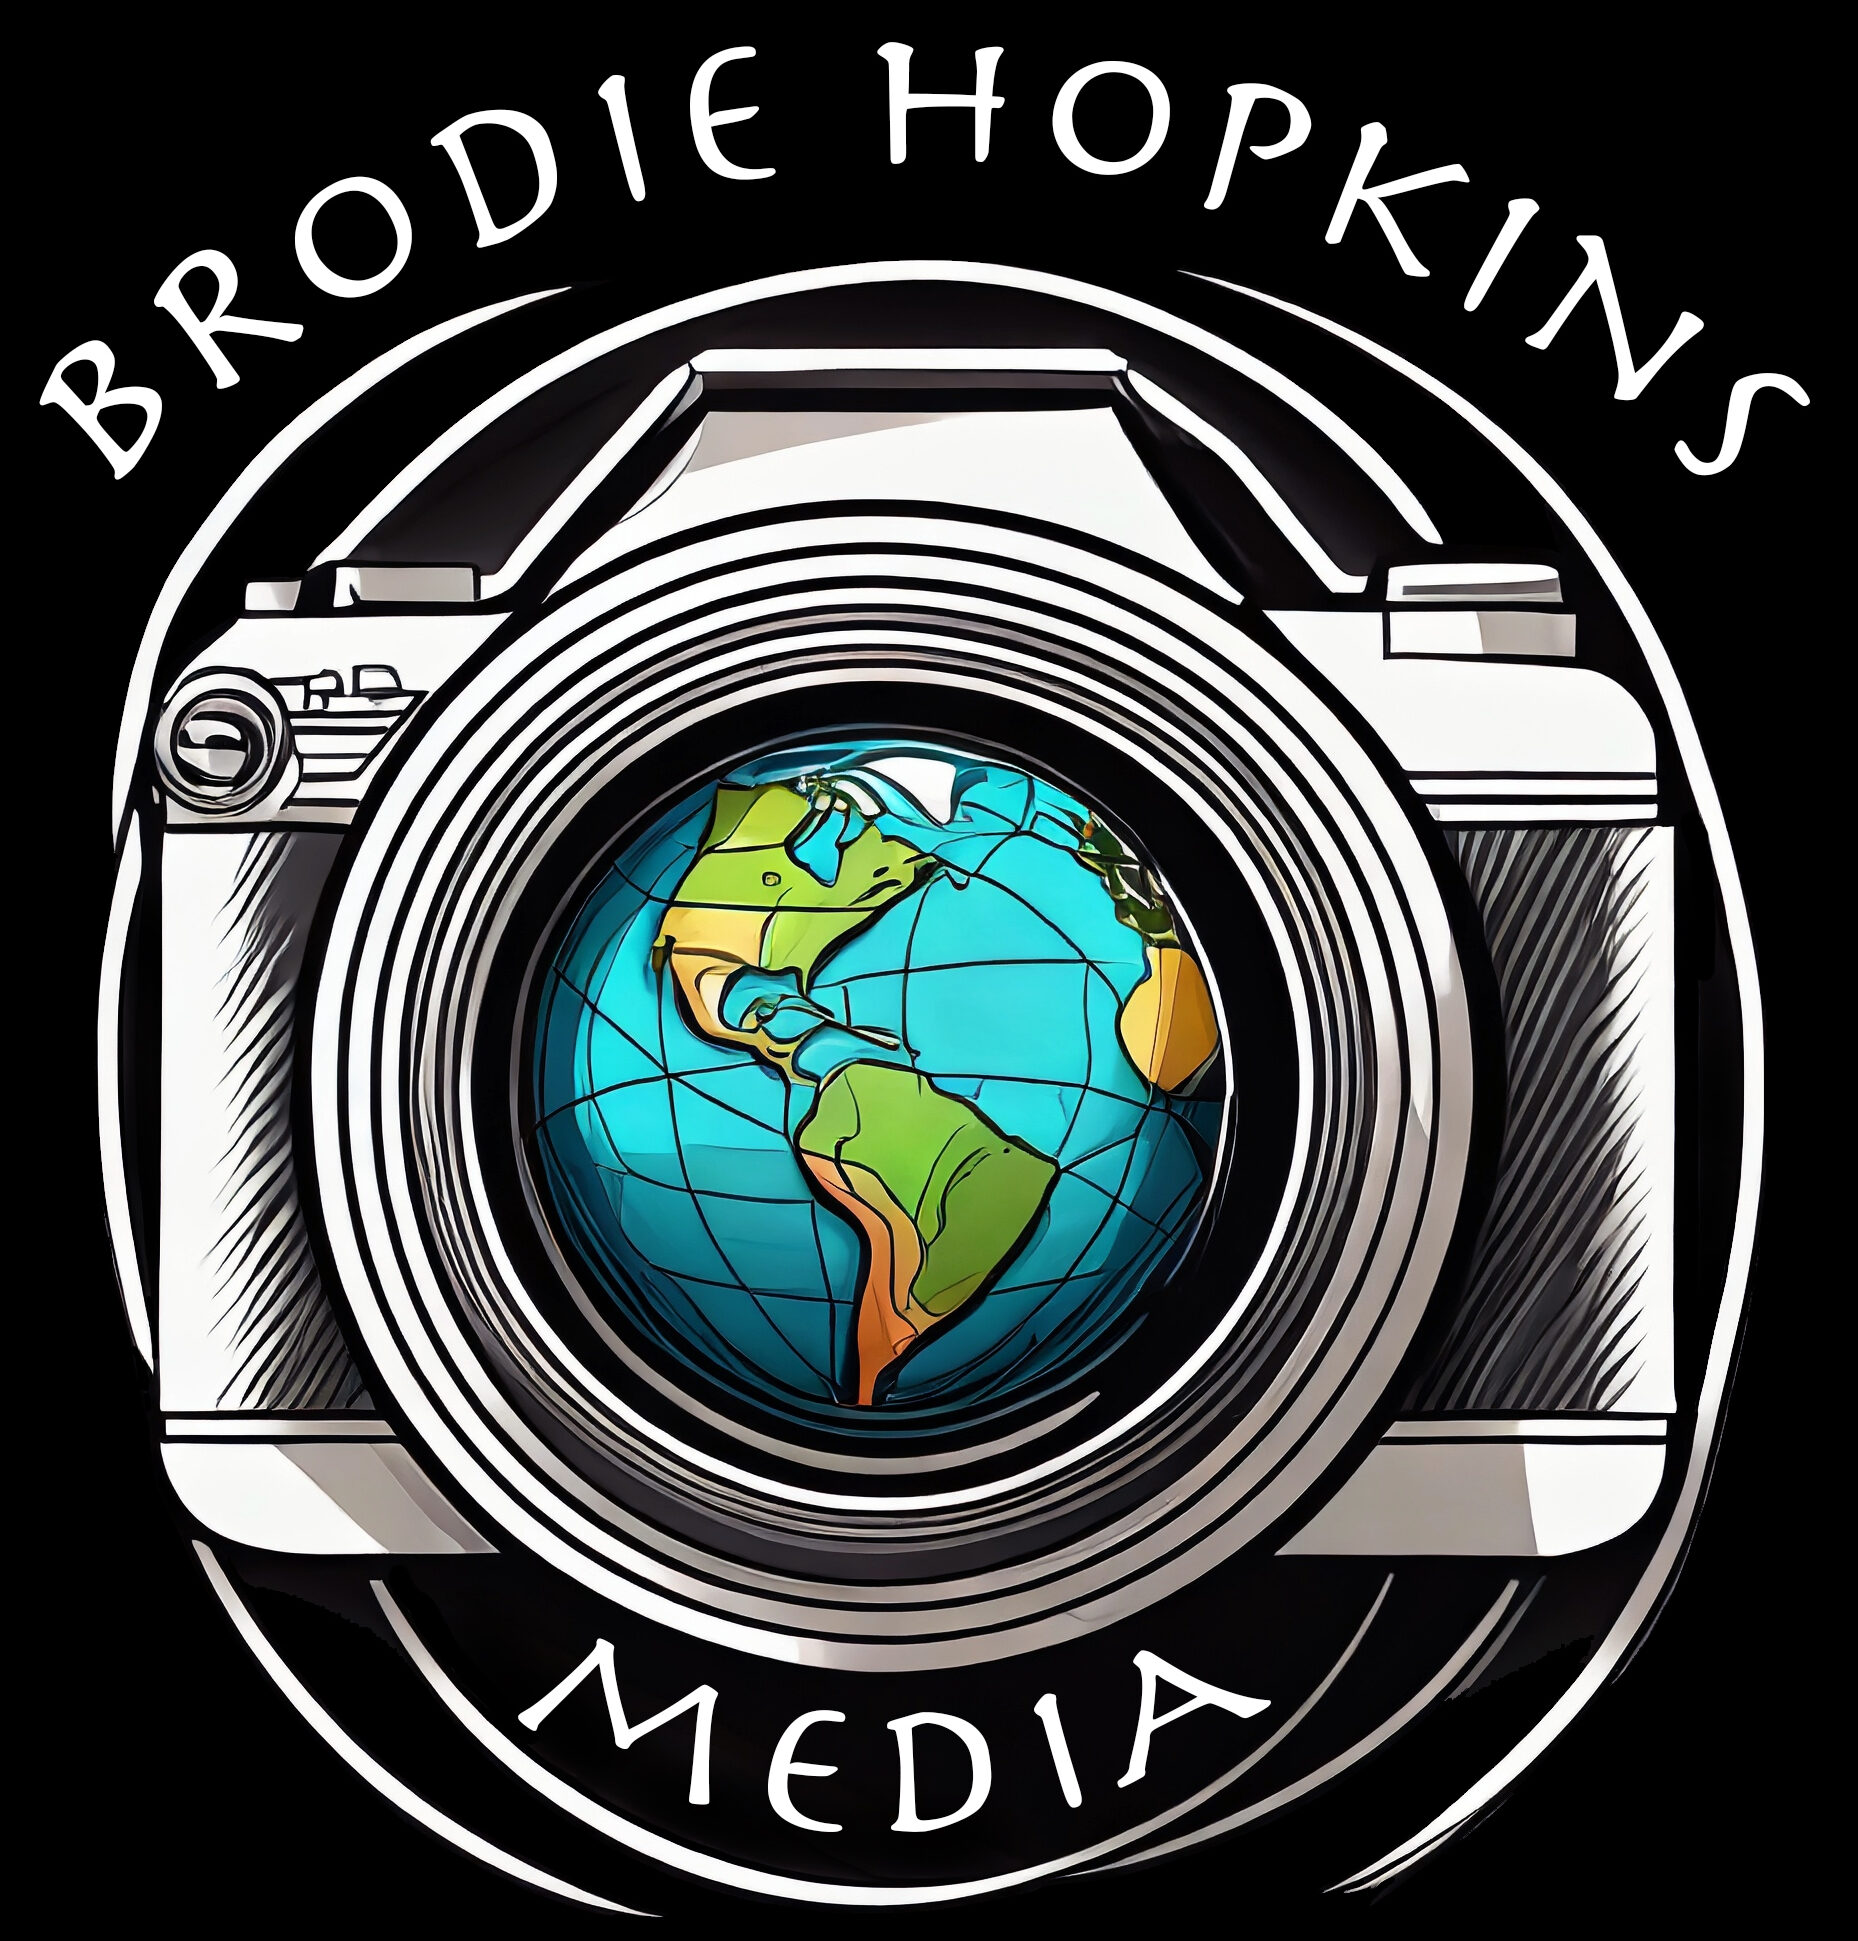 Brodie Hopkins Media